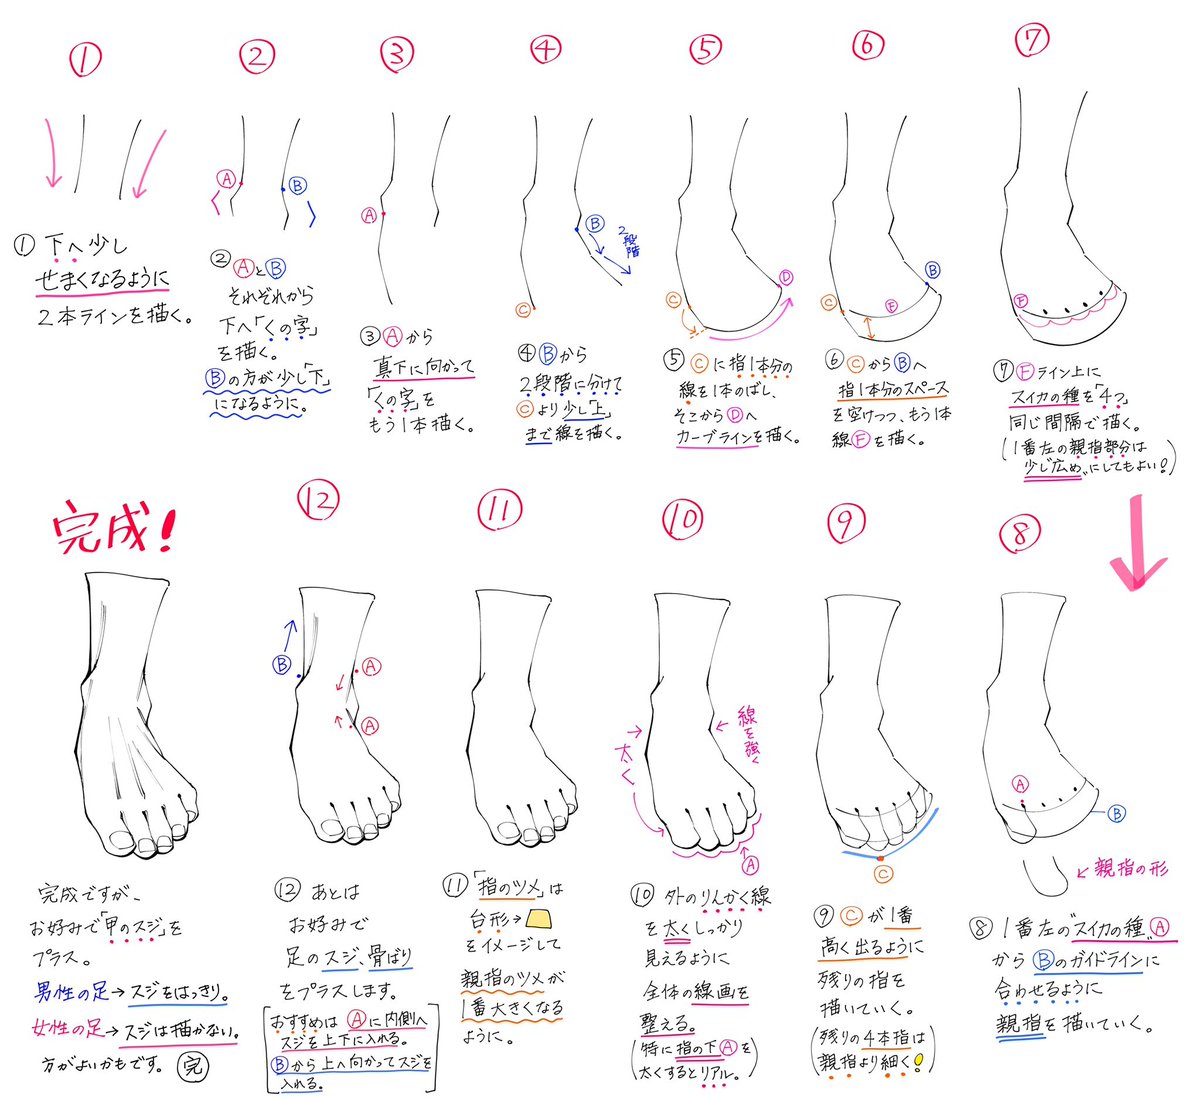 吉村拓也 イラスト講座 真正面からの 足の描き方 ワンポイントだけで 最強にシンプルに描く 手順 です